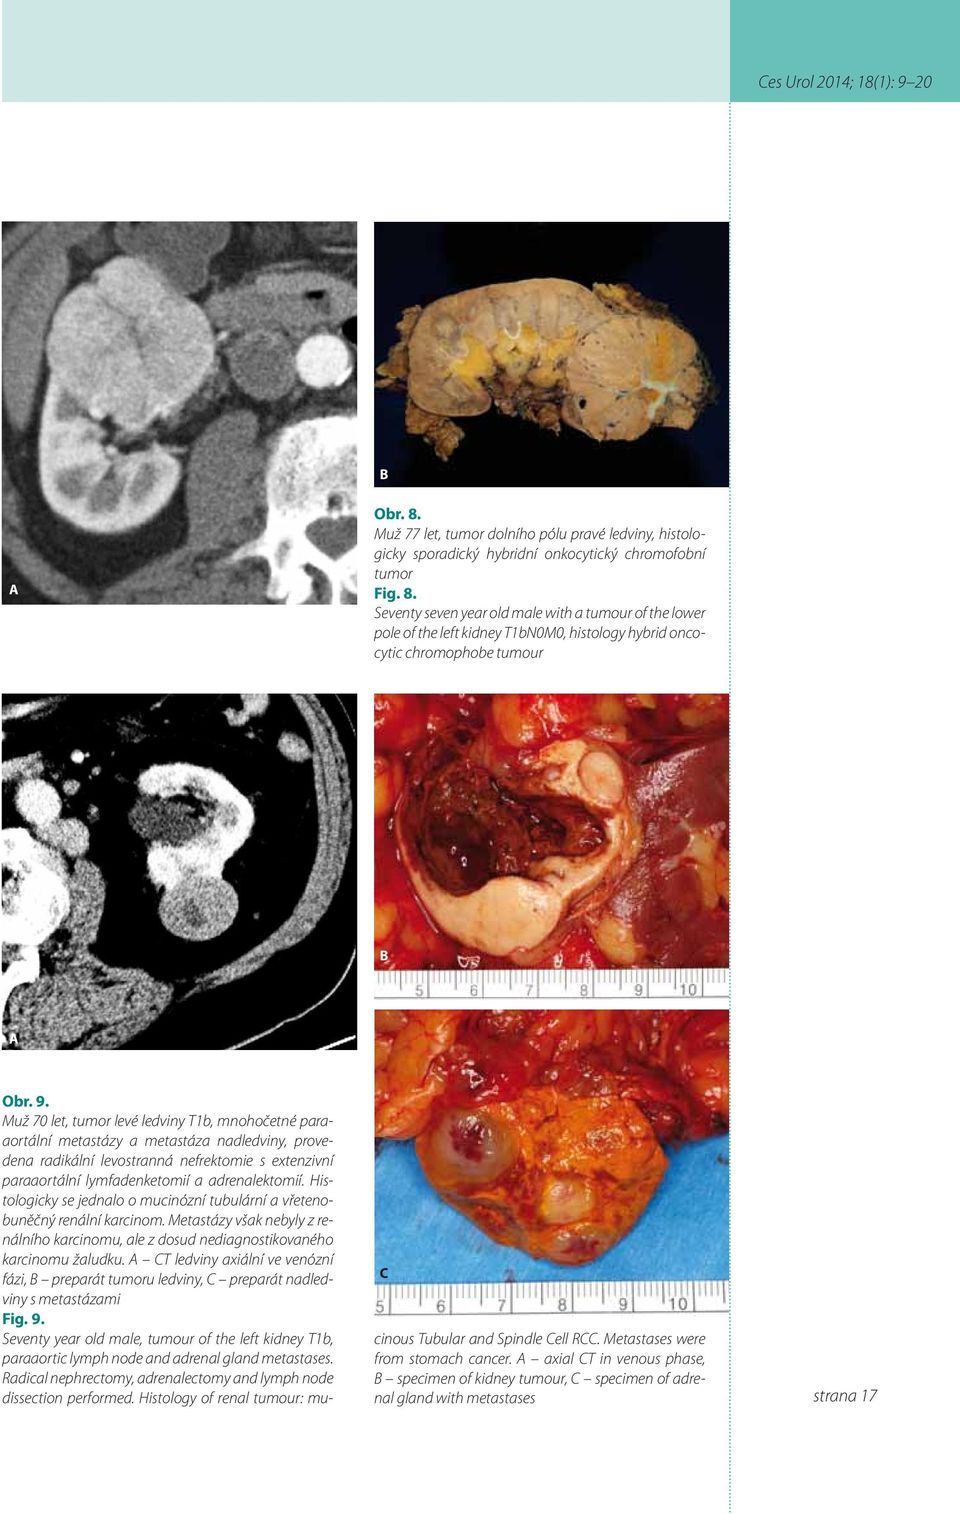 Histologicky se jednalo o mucinózní tubulární a vřetenobuněčný renální karcinom. Metastázy však nebyly z renálního karcinomu, ale z dosud nediagnostikovaného karcinomu žaludku.